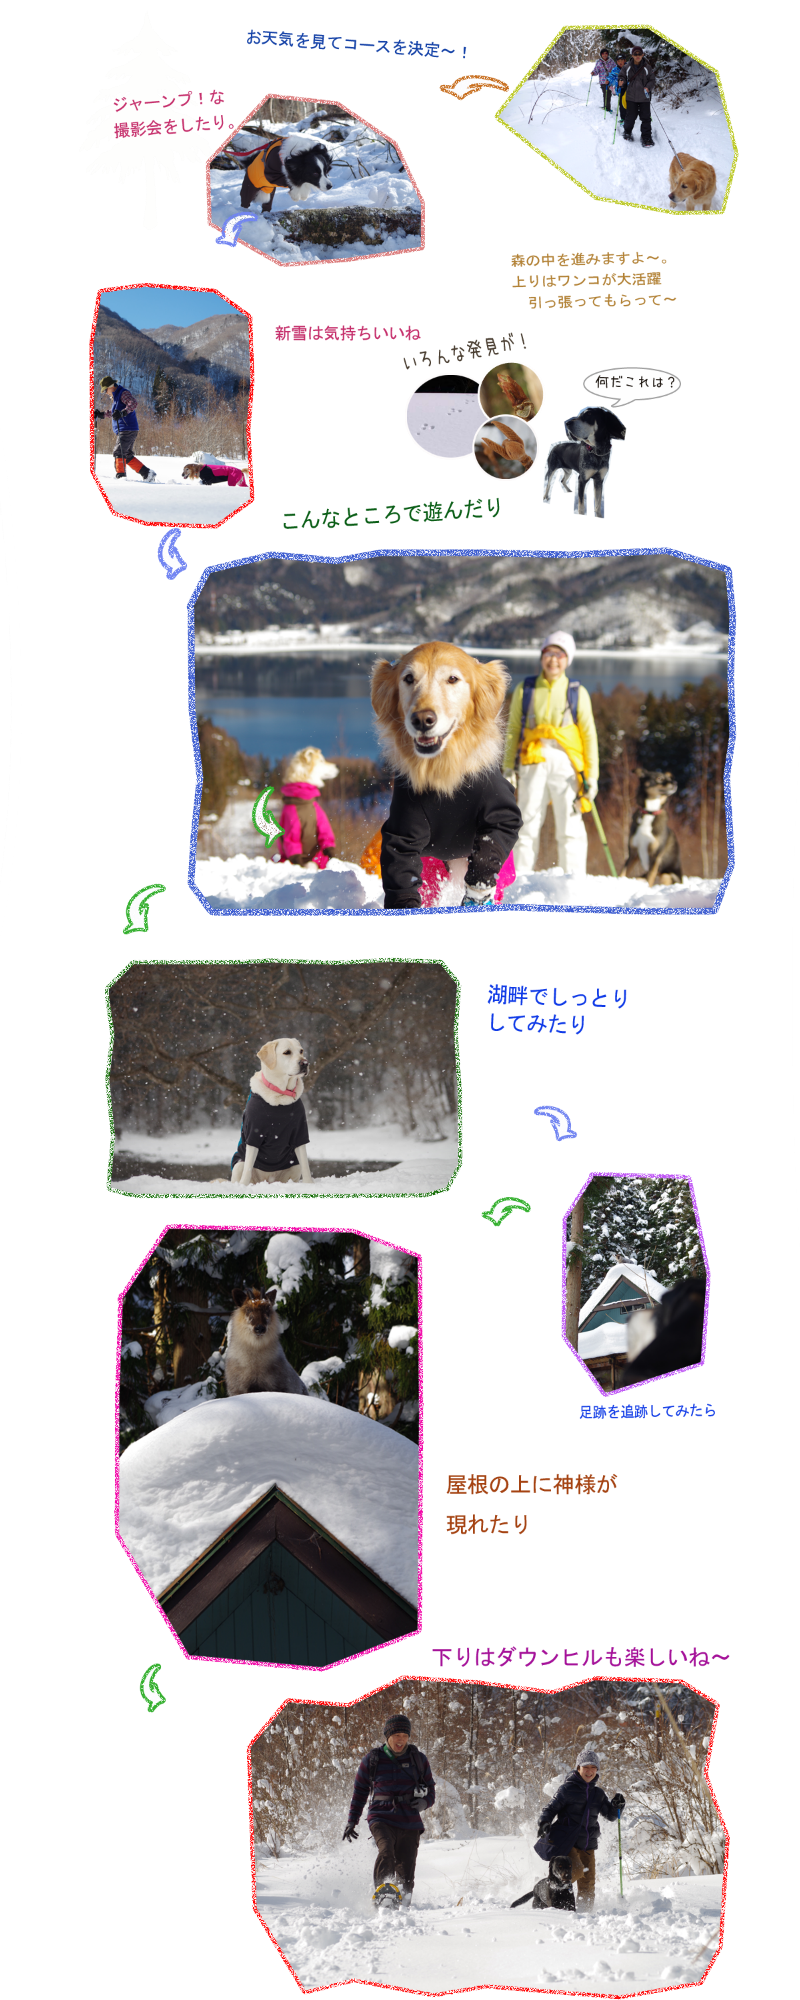 犬とスノーシュー体験 白馬で愛犬と雪遊び